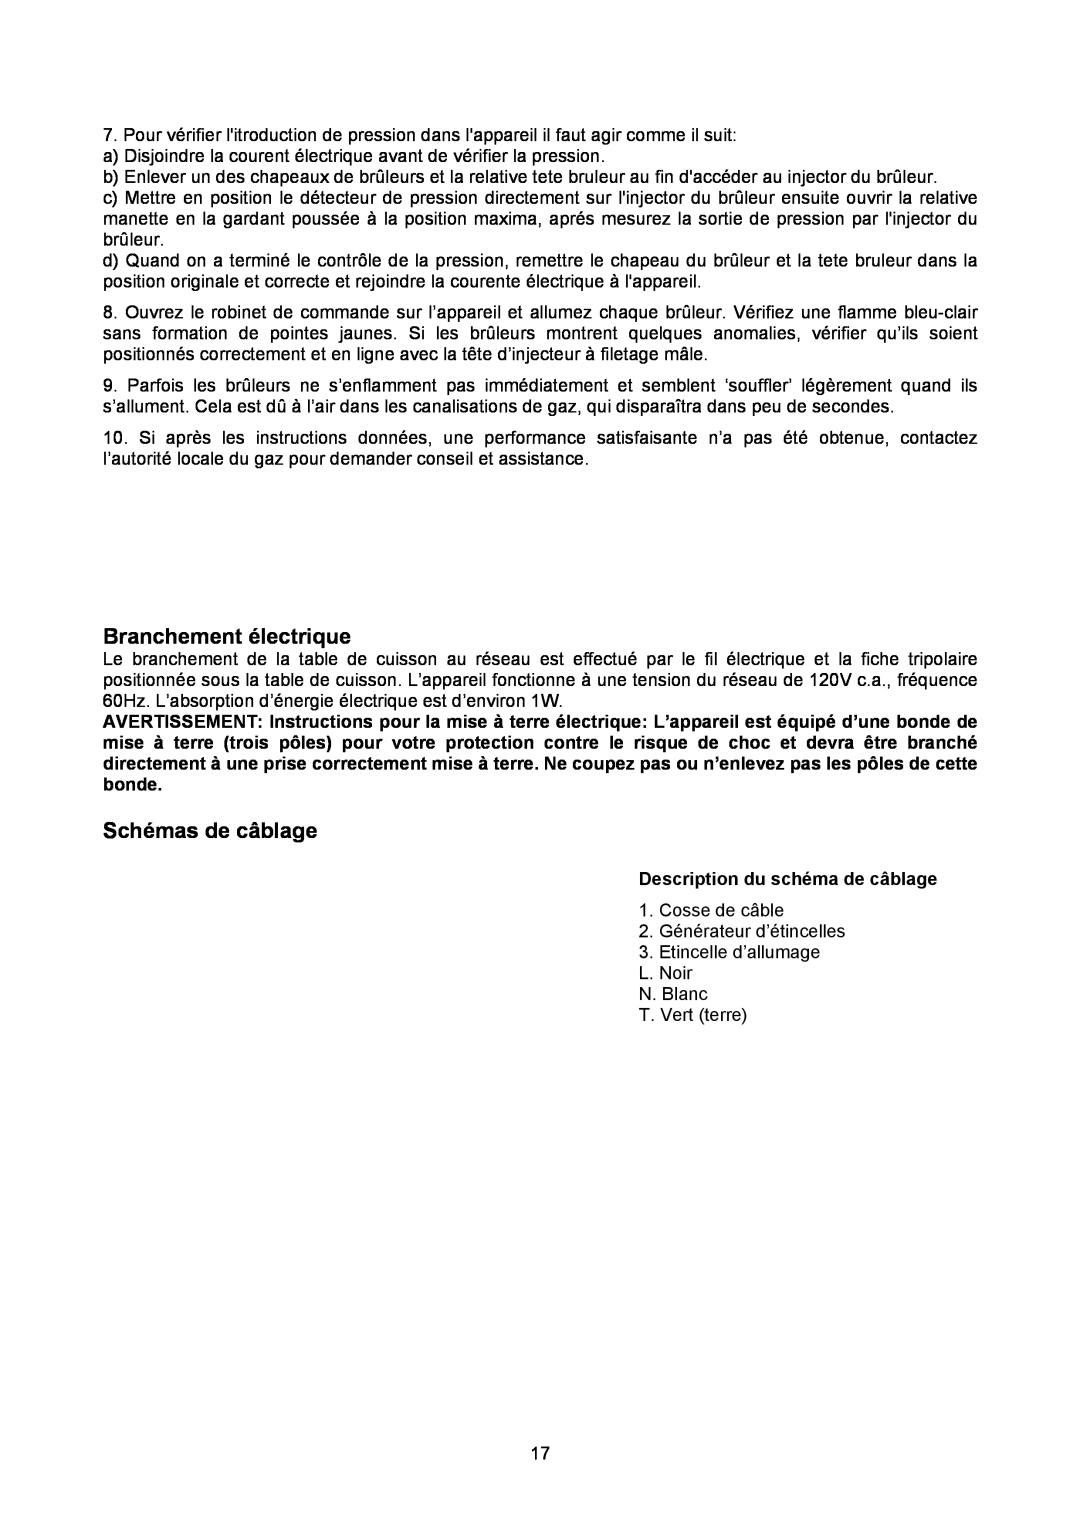 Bertazzoni P24400X manual Branchement électrique, Schémas de câblage, Description du schéma de câblage 